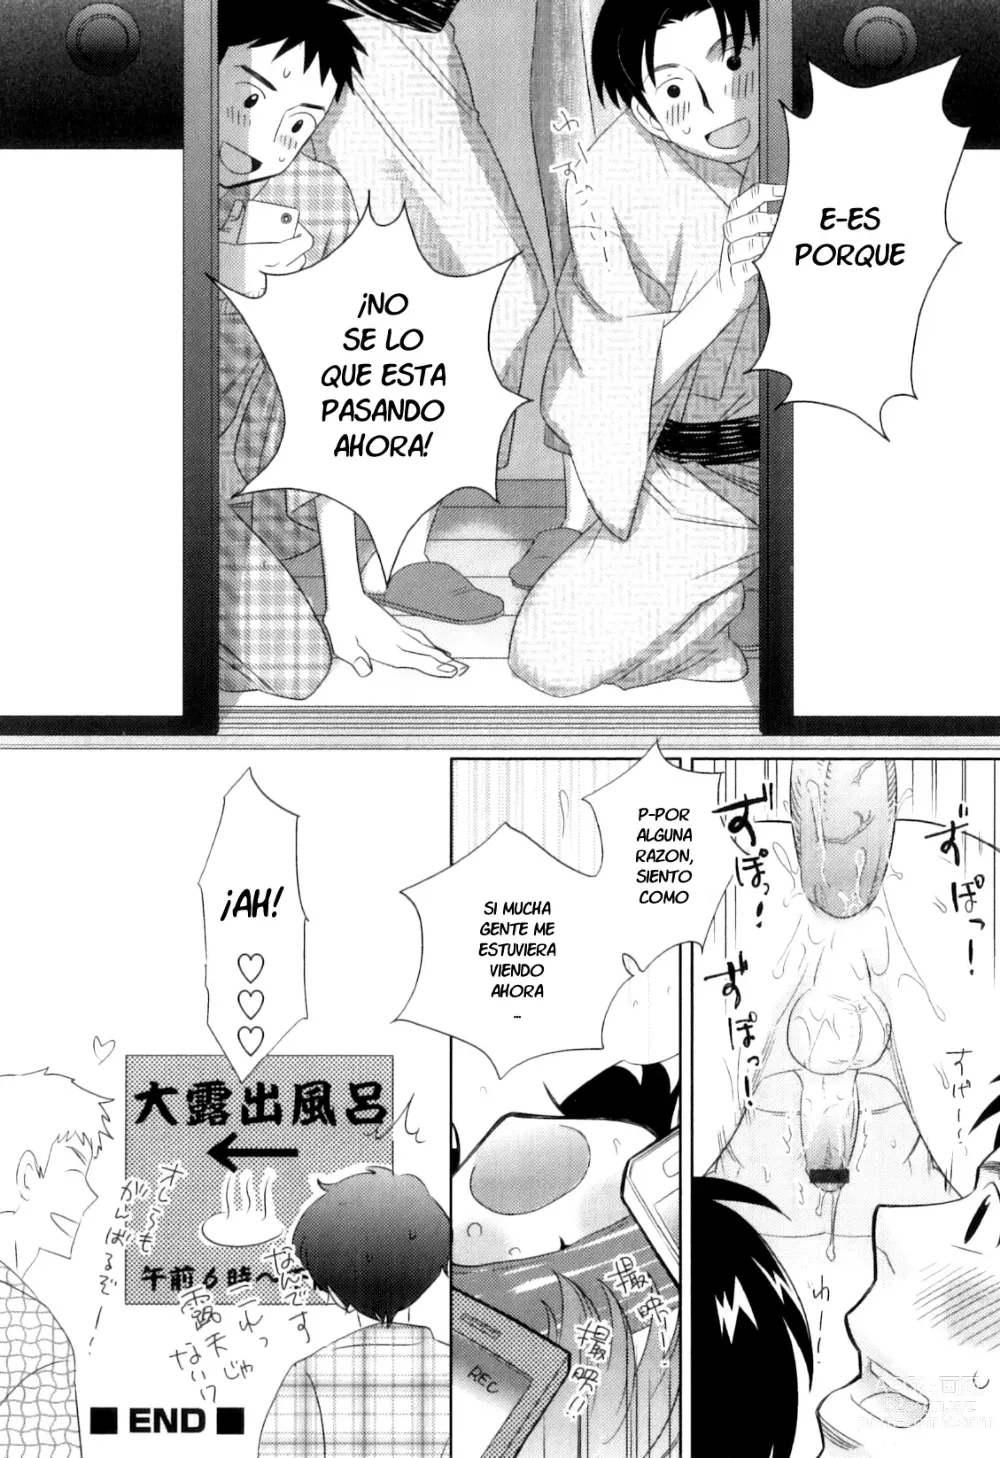 Page 12 of manga Ro*Buro